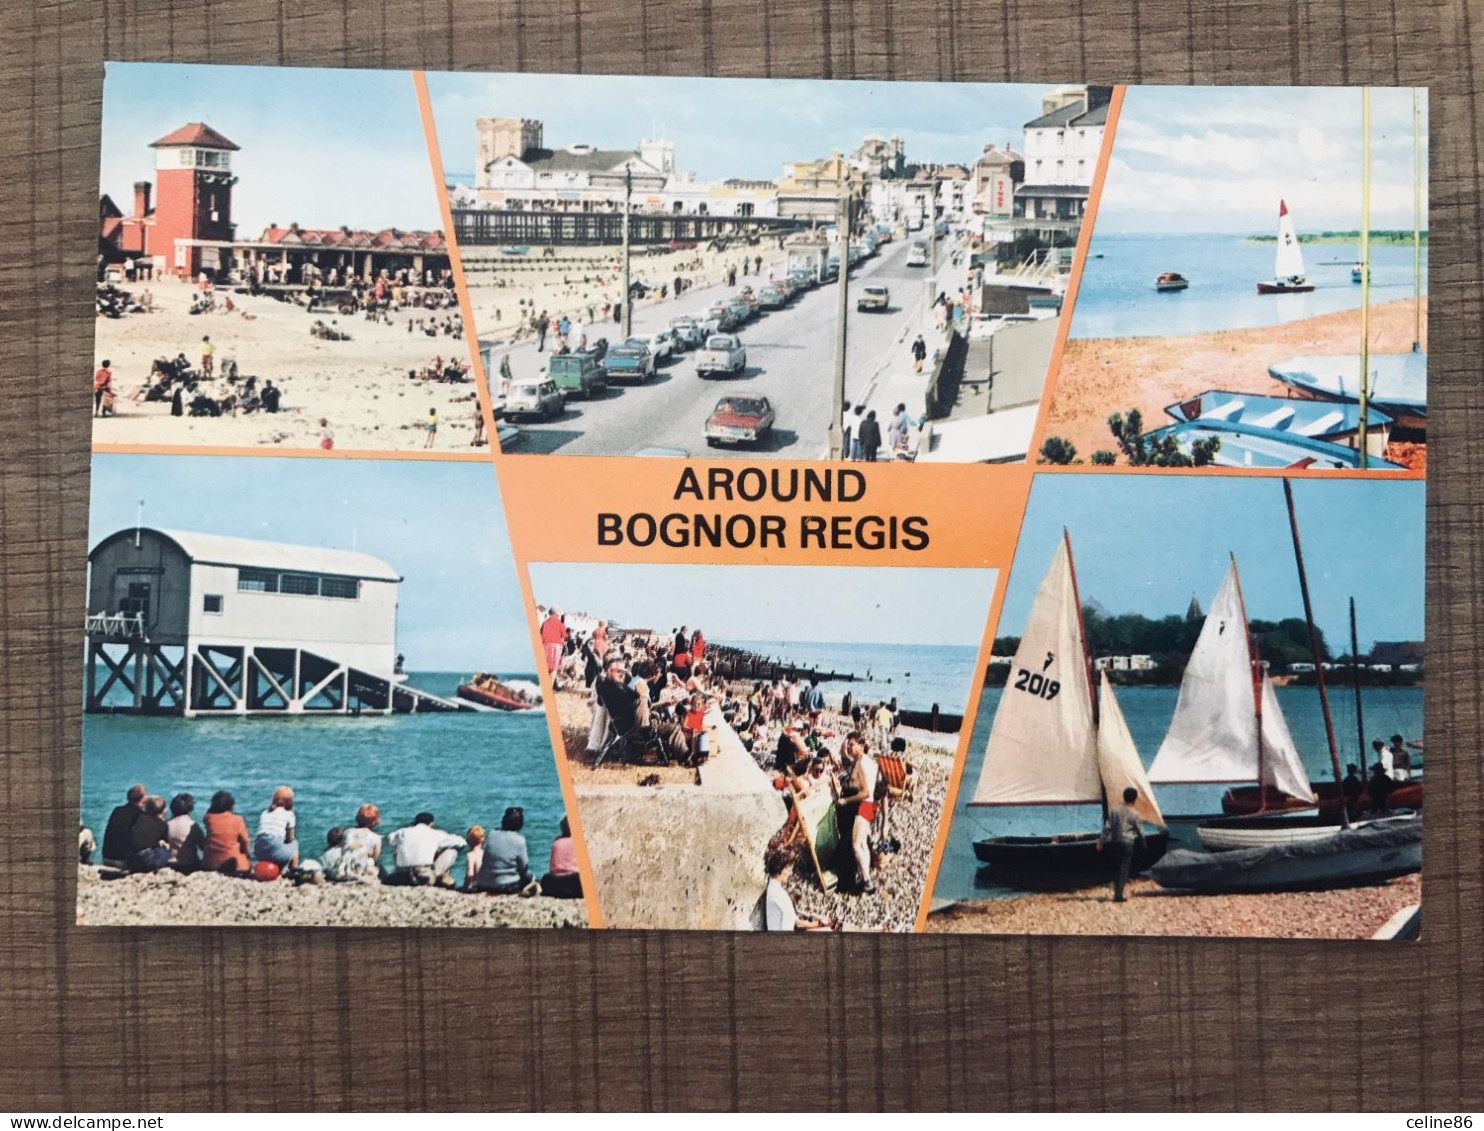  AROUND BOGNOR REGIS  - Bognor Regis